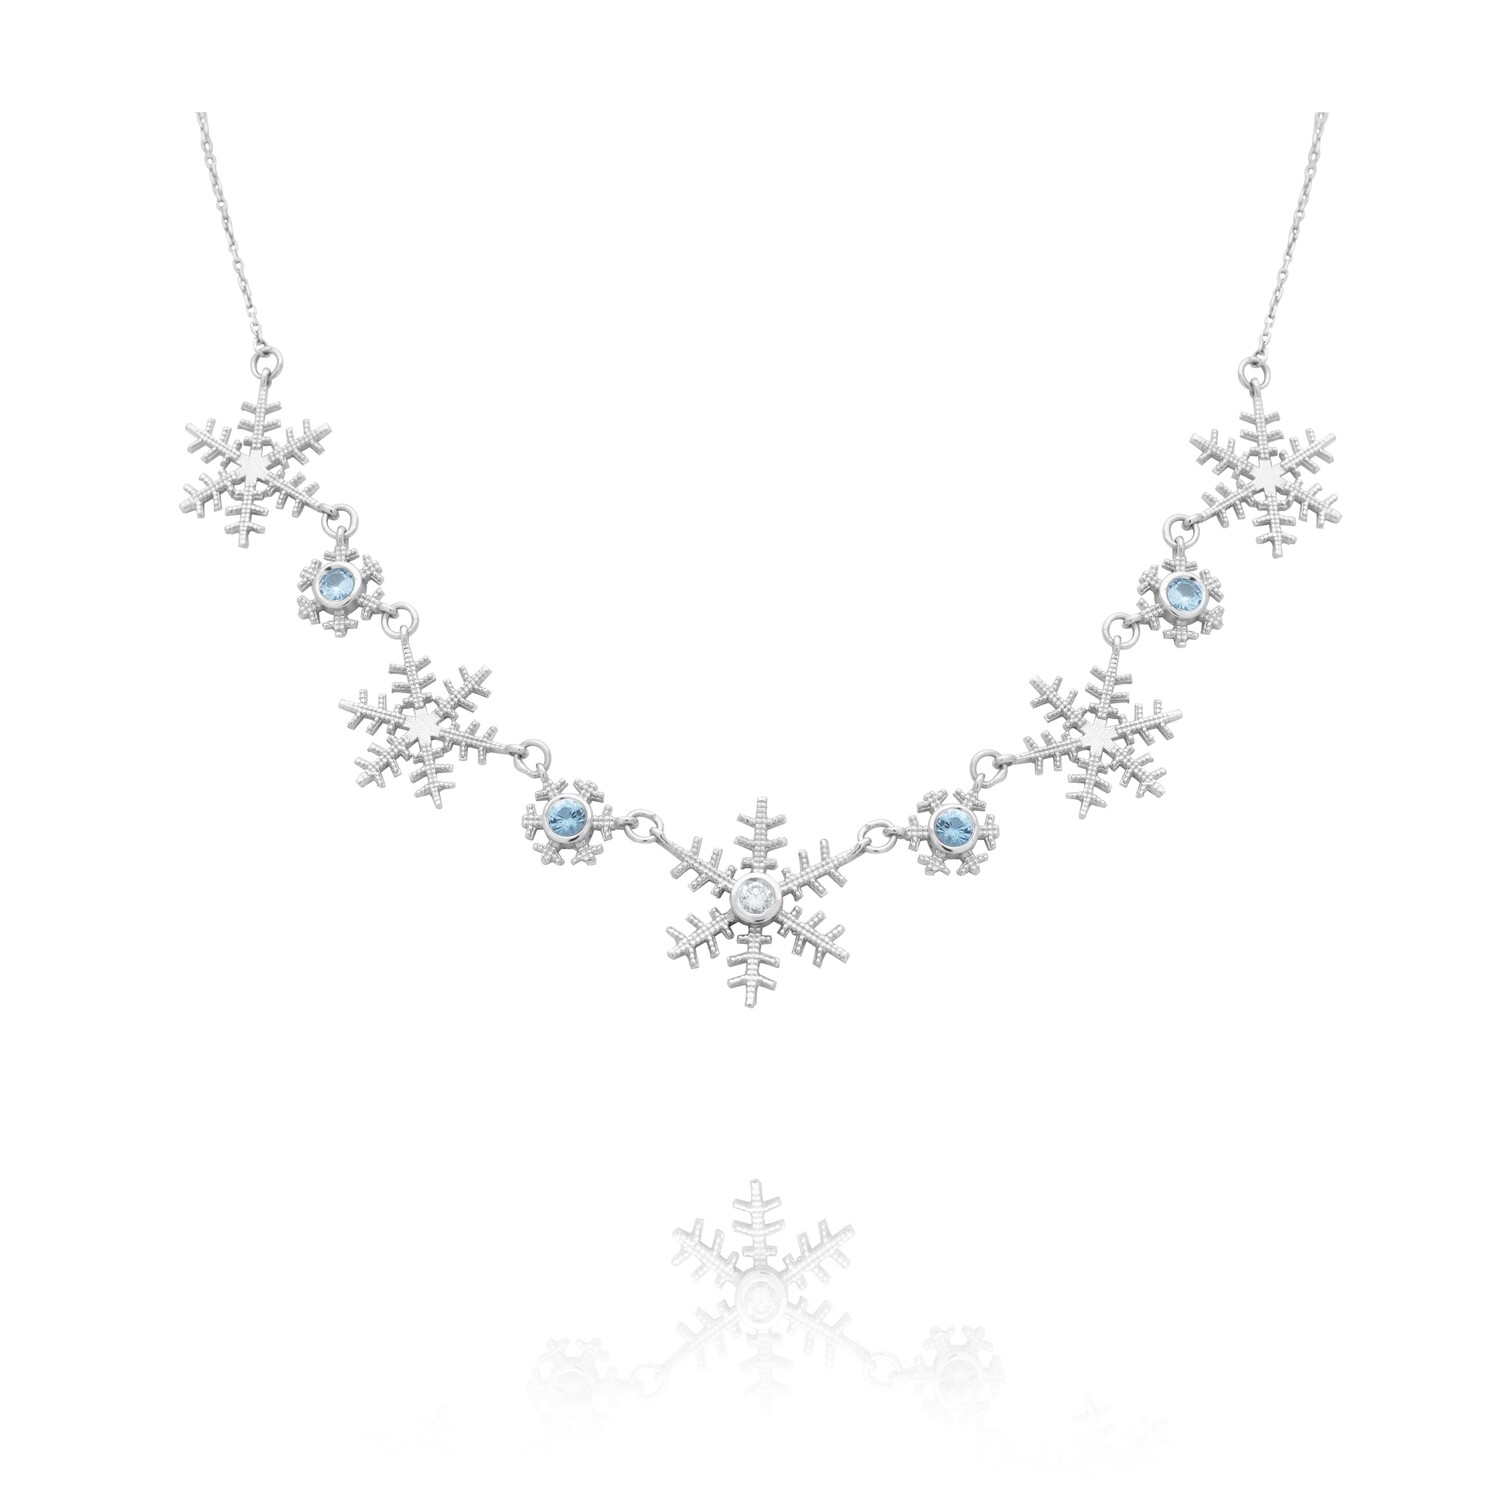 Snowflake Diamond Necklace with Precious Stones